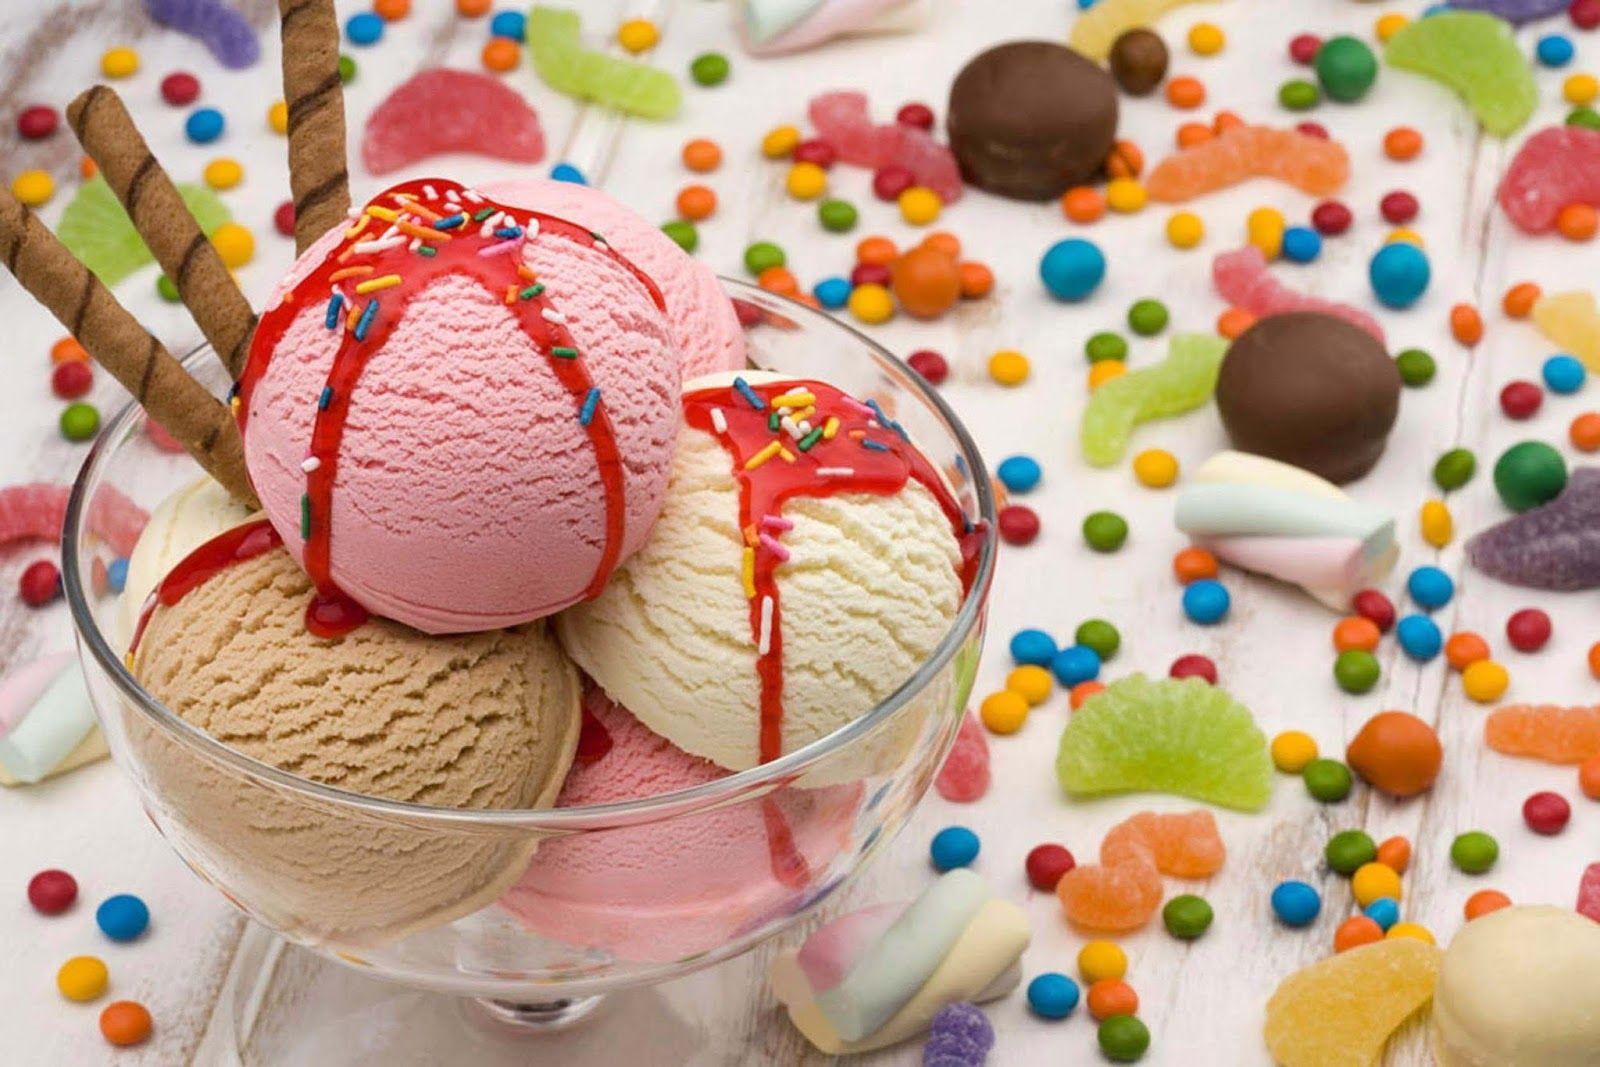 نمای بستنی اسکوپی های خوشمزه با تزئین اسمارتیز و پاستیل و مارشمالو